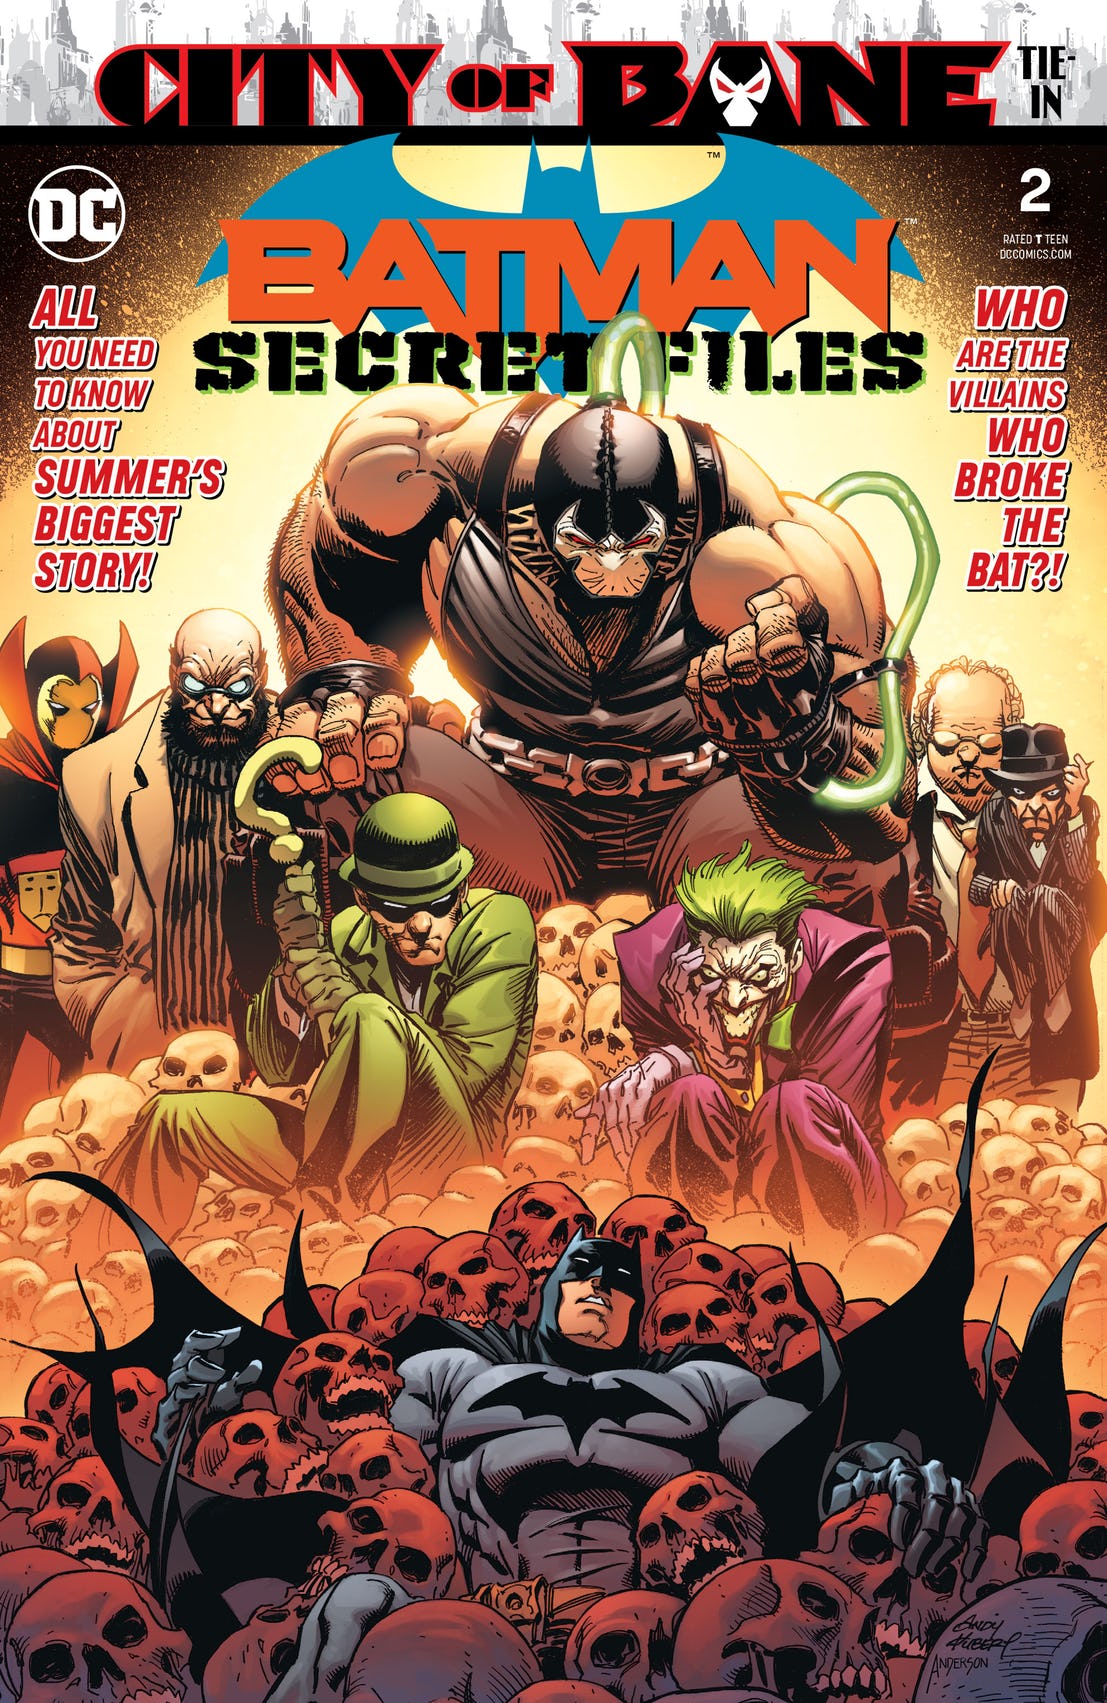 Batman: Secret Files #2 review: a little dusty